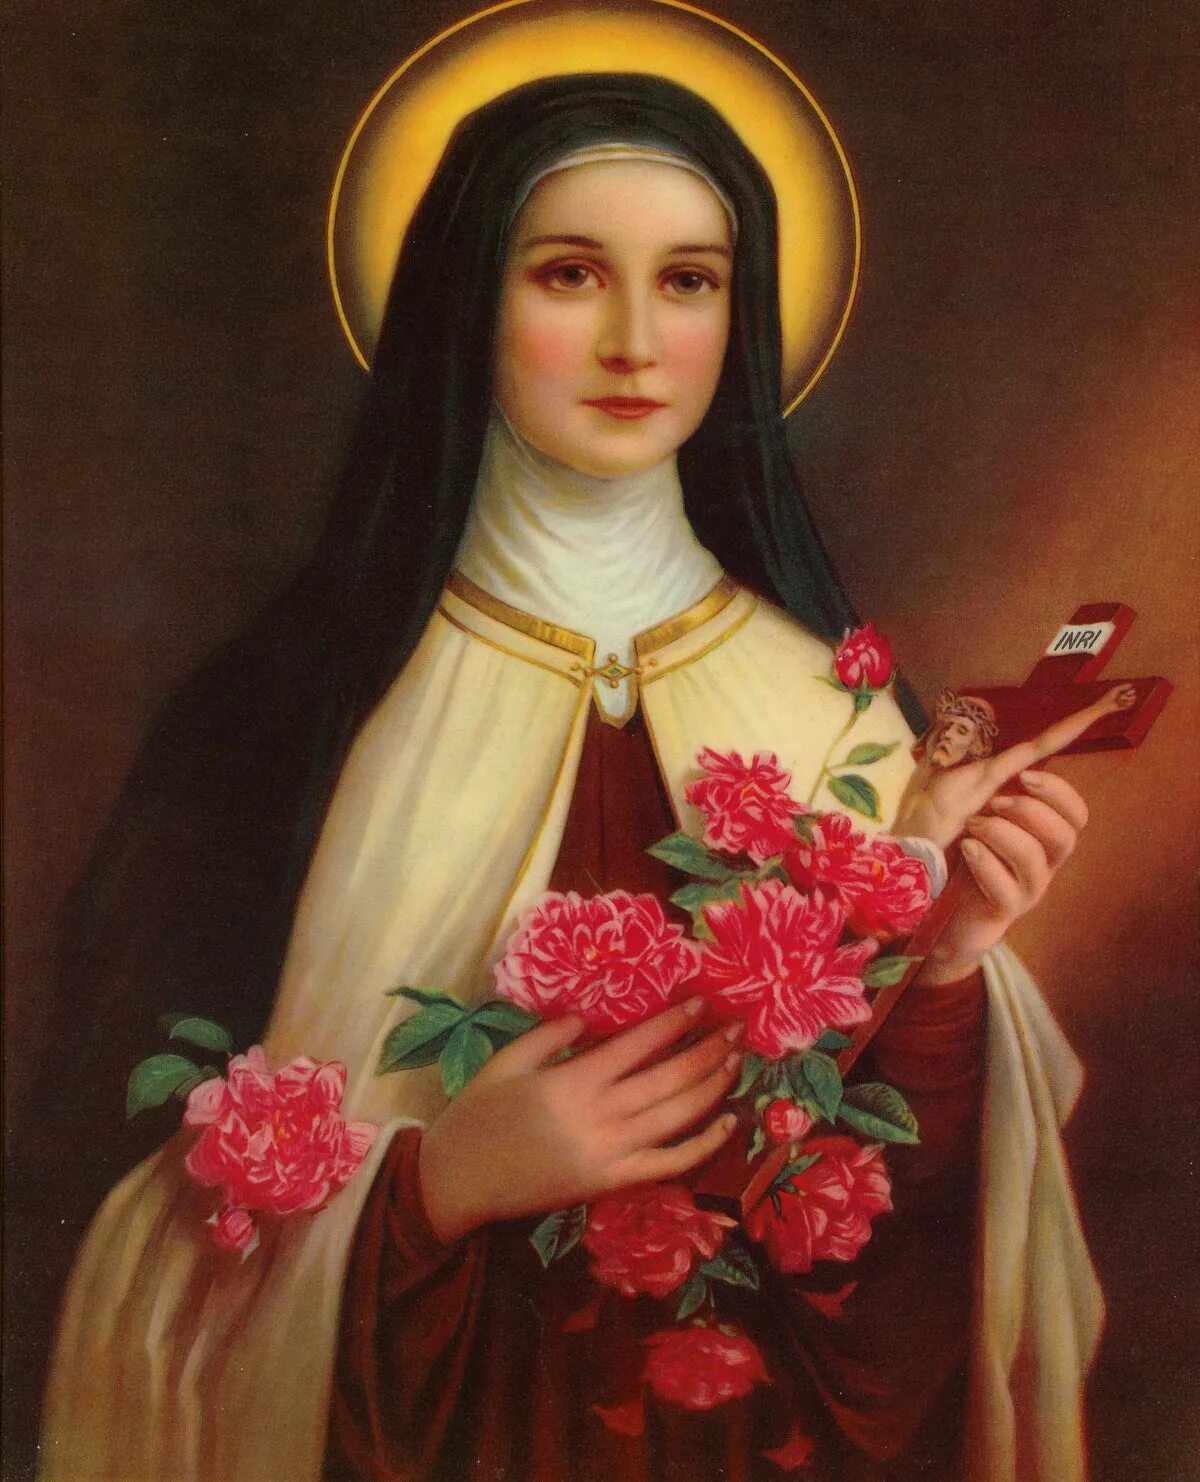 Католические святые. Святая Тереза Авильская. St. Therese of Lisieux. Святая Тереза де Лизье. Святая Тереза из Лизье икона.